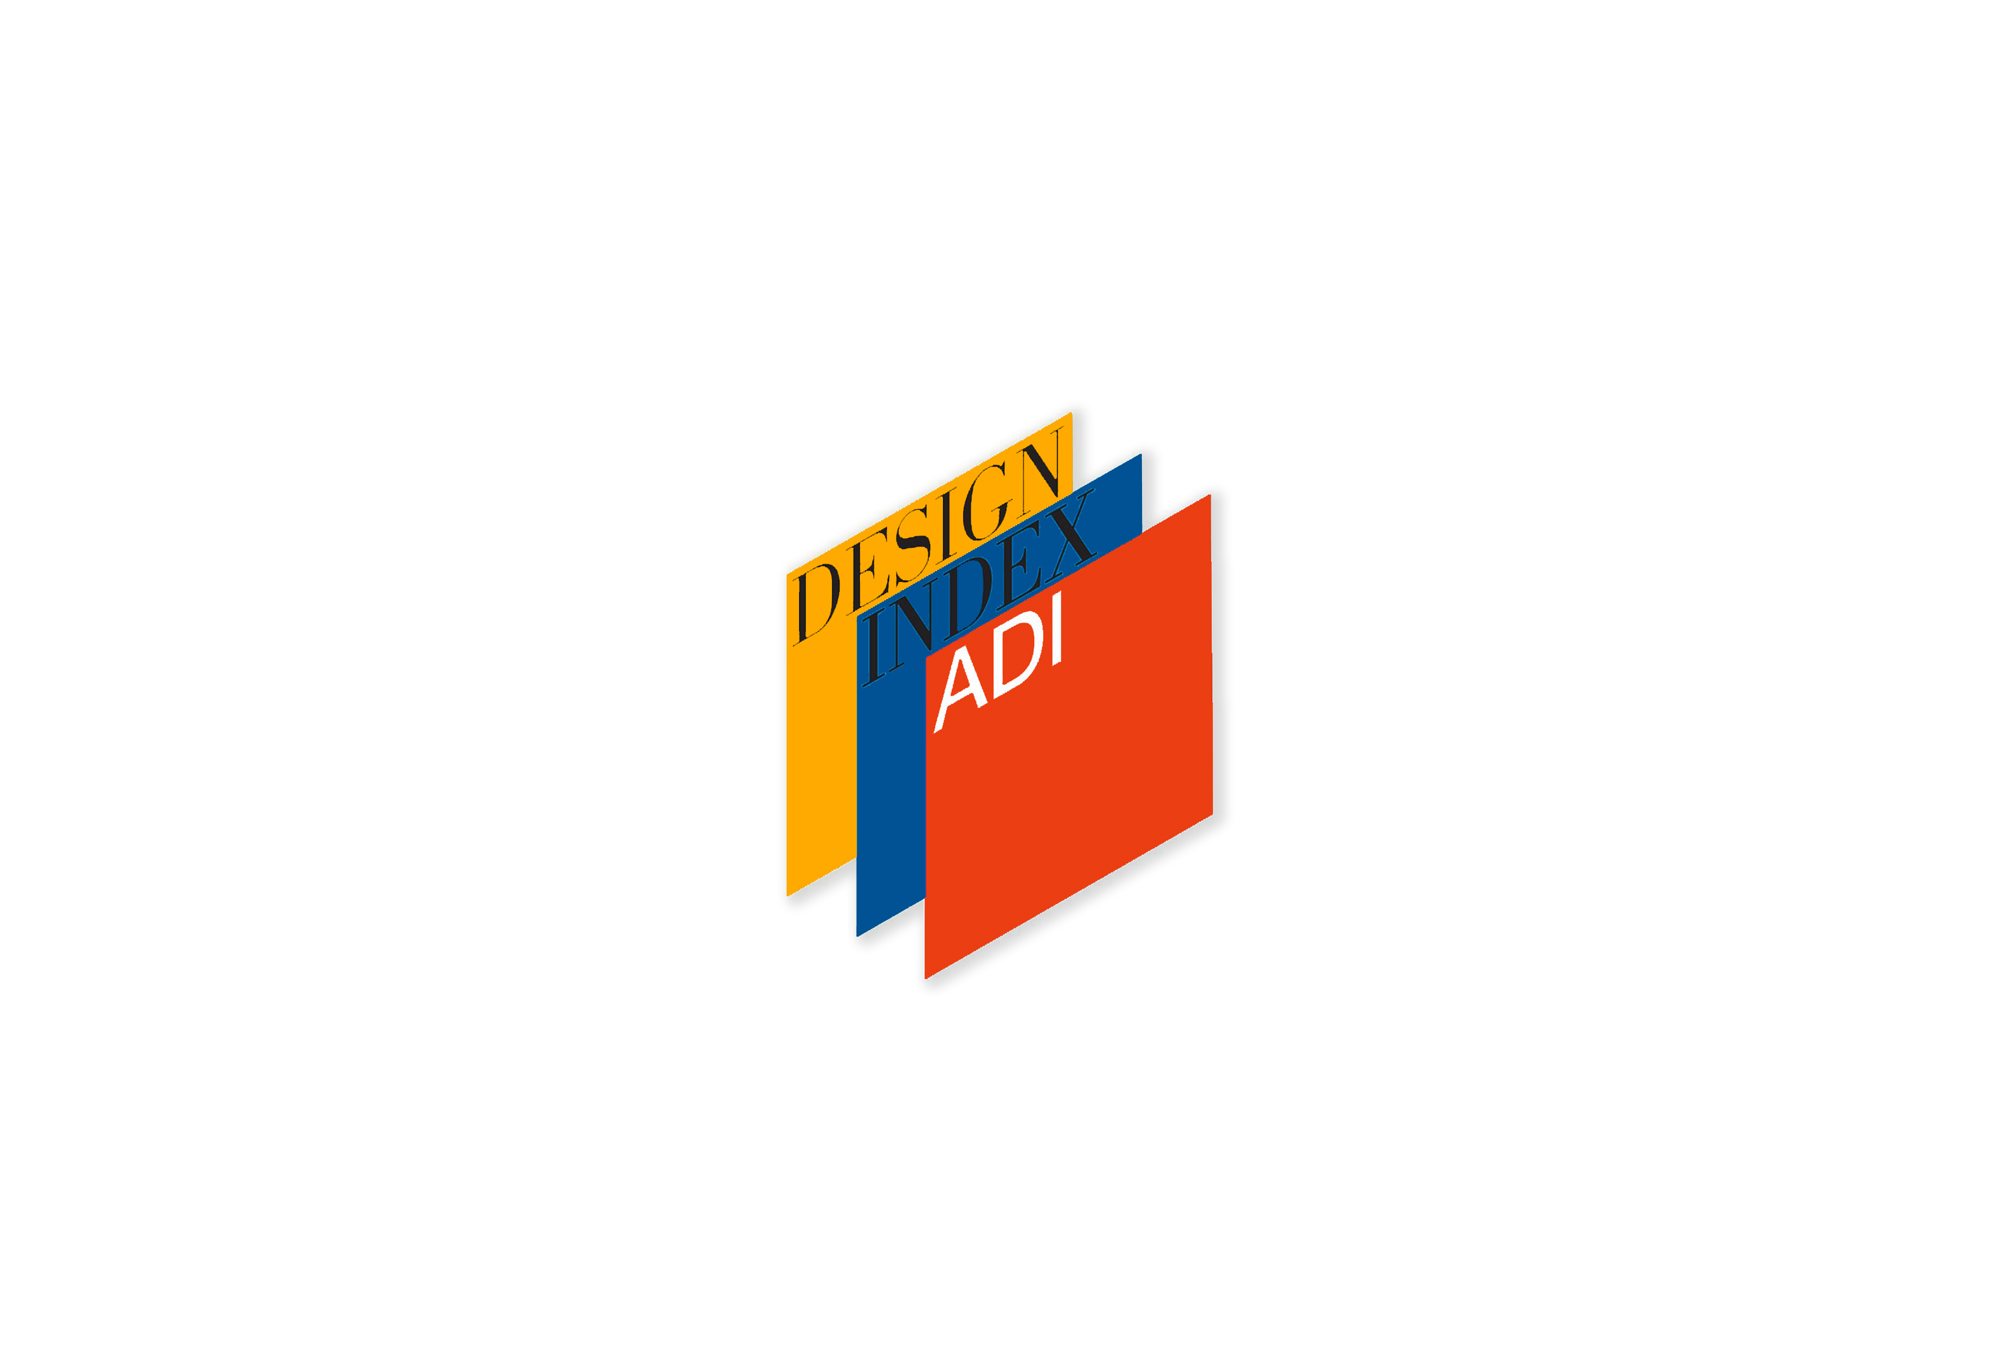 Innovationspreises ADI Design Index 2017 